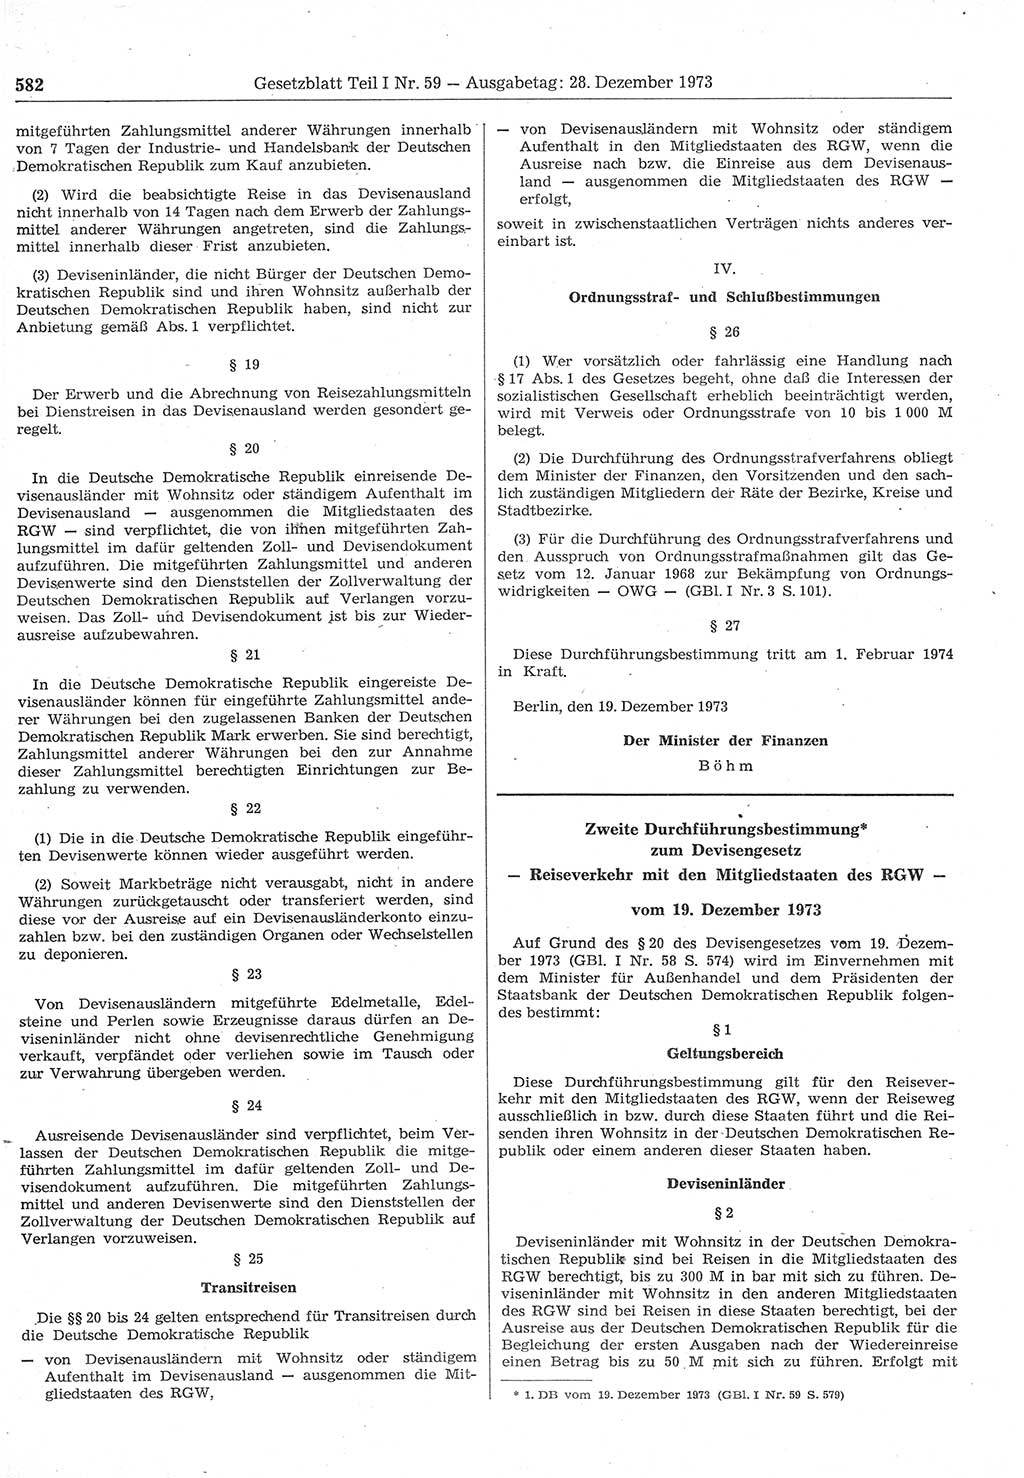 Gesetzblatt (GBl.) der Deutschen Demokratischen Republik (DDR) Teil Ⅰ 1973, Seite 582 (GBl. DDR Ⅰ 1973, S. 582)